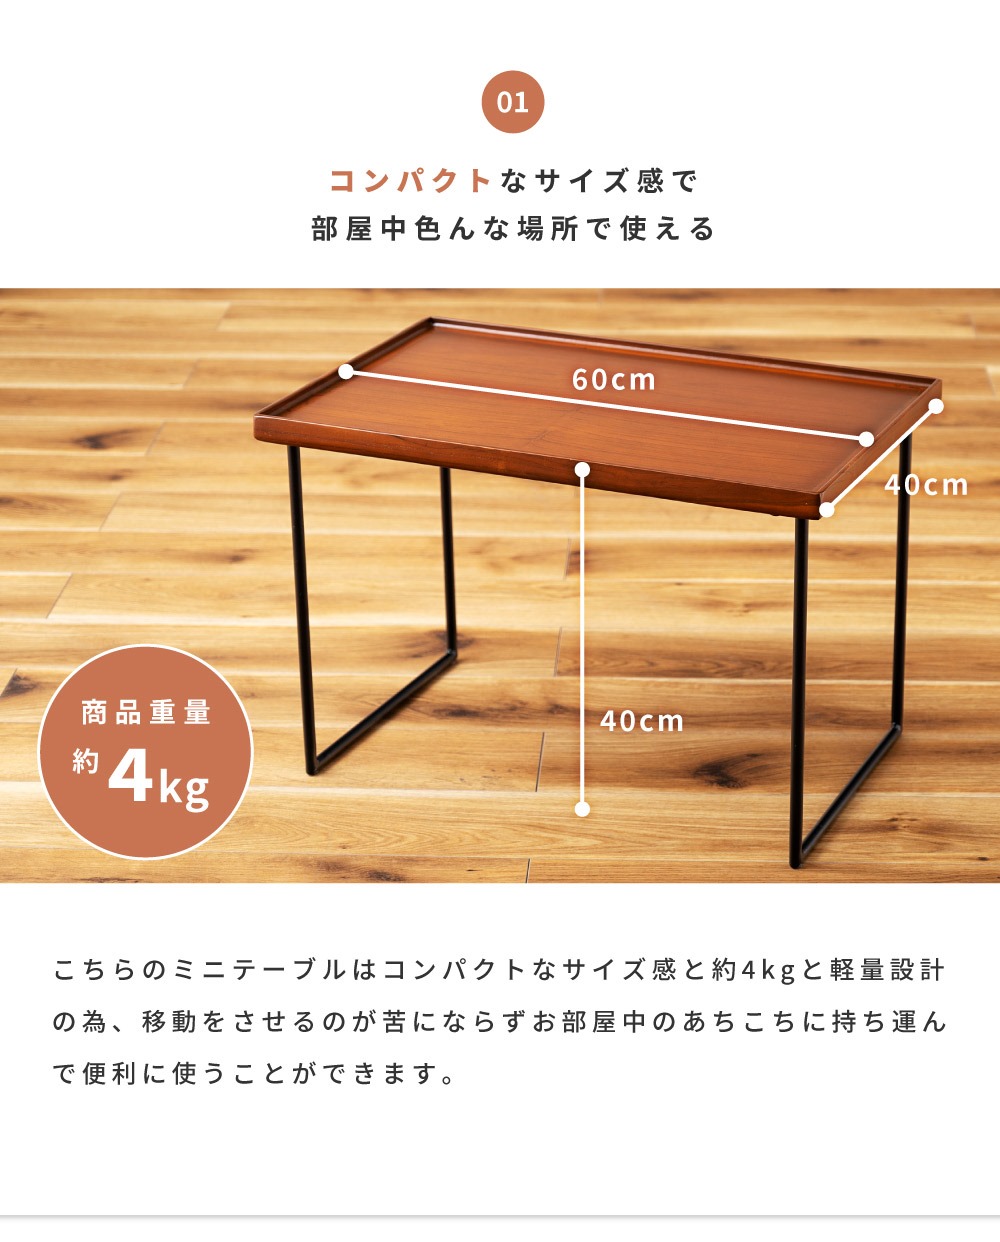 ミニテーブル Lサイズ センターテーブル 木製 幅60 高さ40 おしゃれ コンパクト スチール脚 小さ目 小さい机